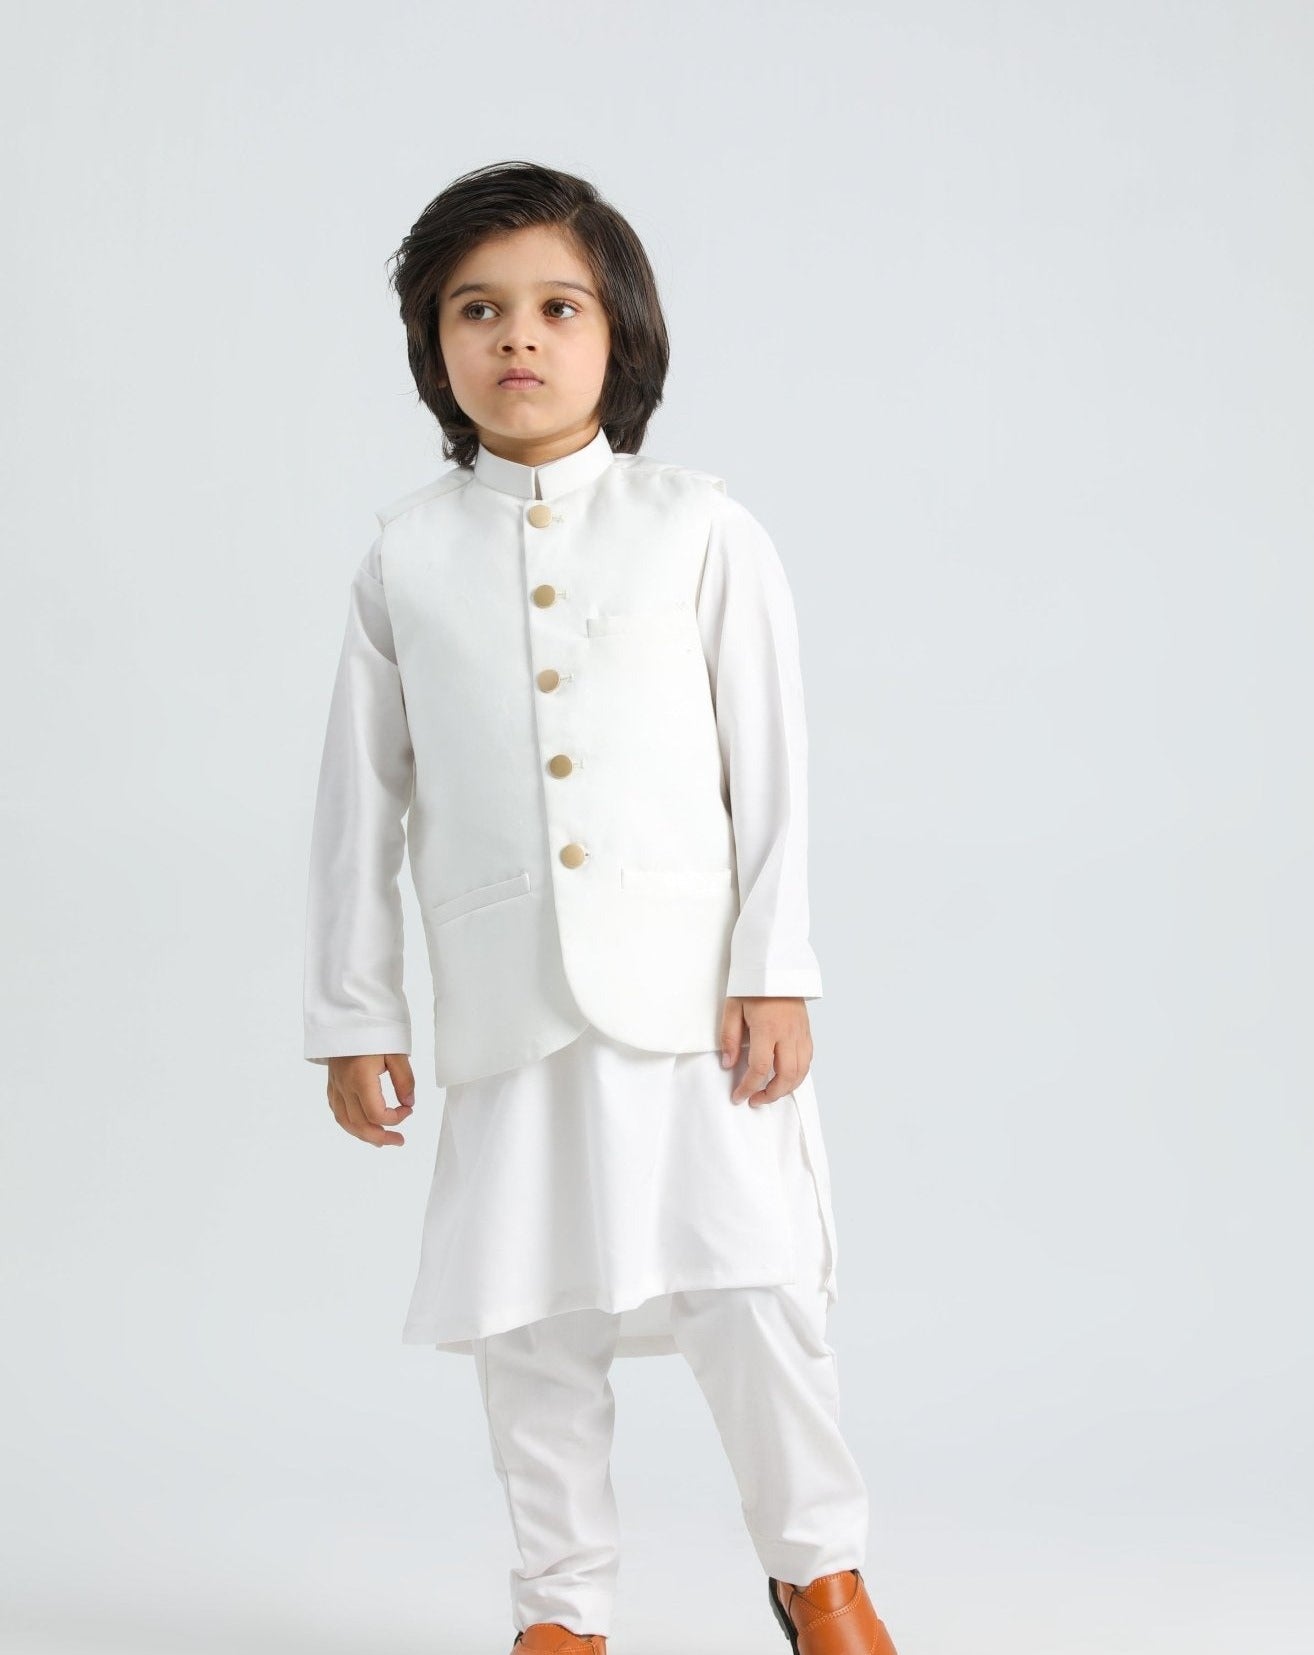 Off White Shalwar Kameez and Waistcoat - 3PC Set - Kids